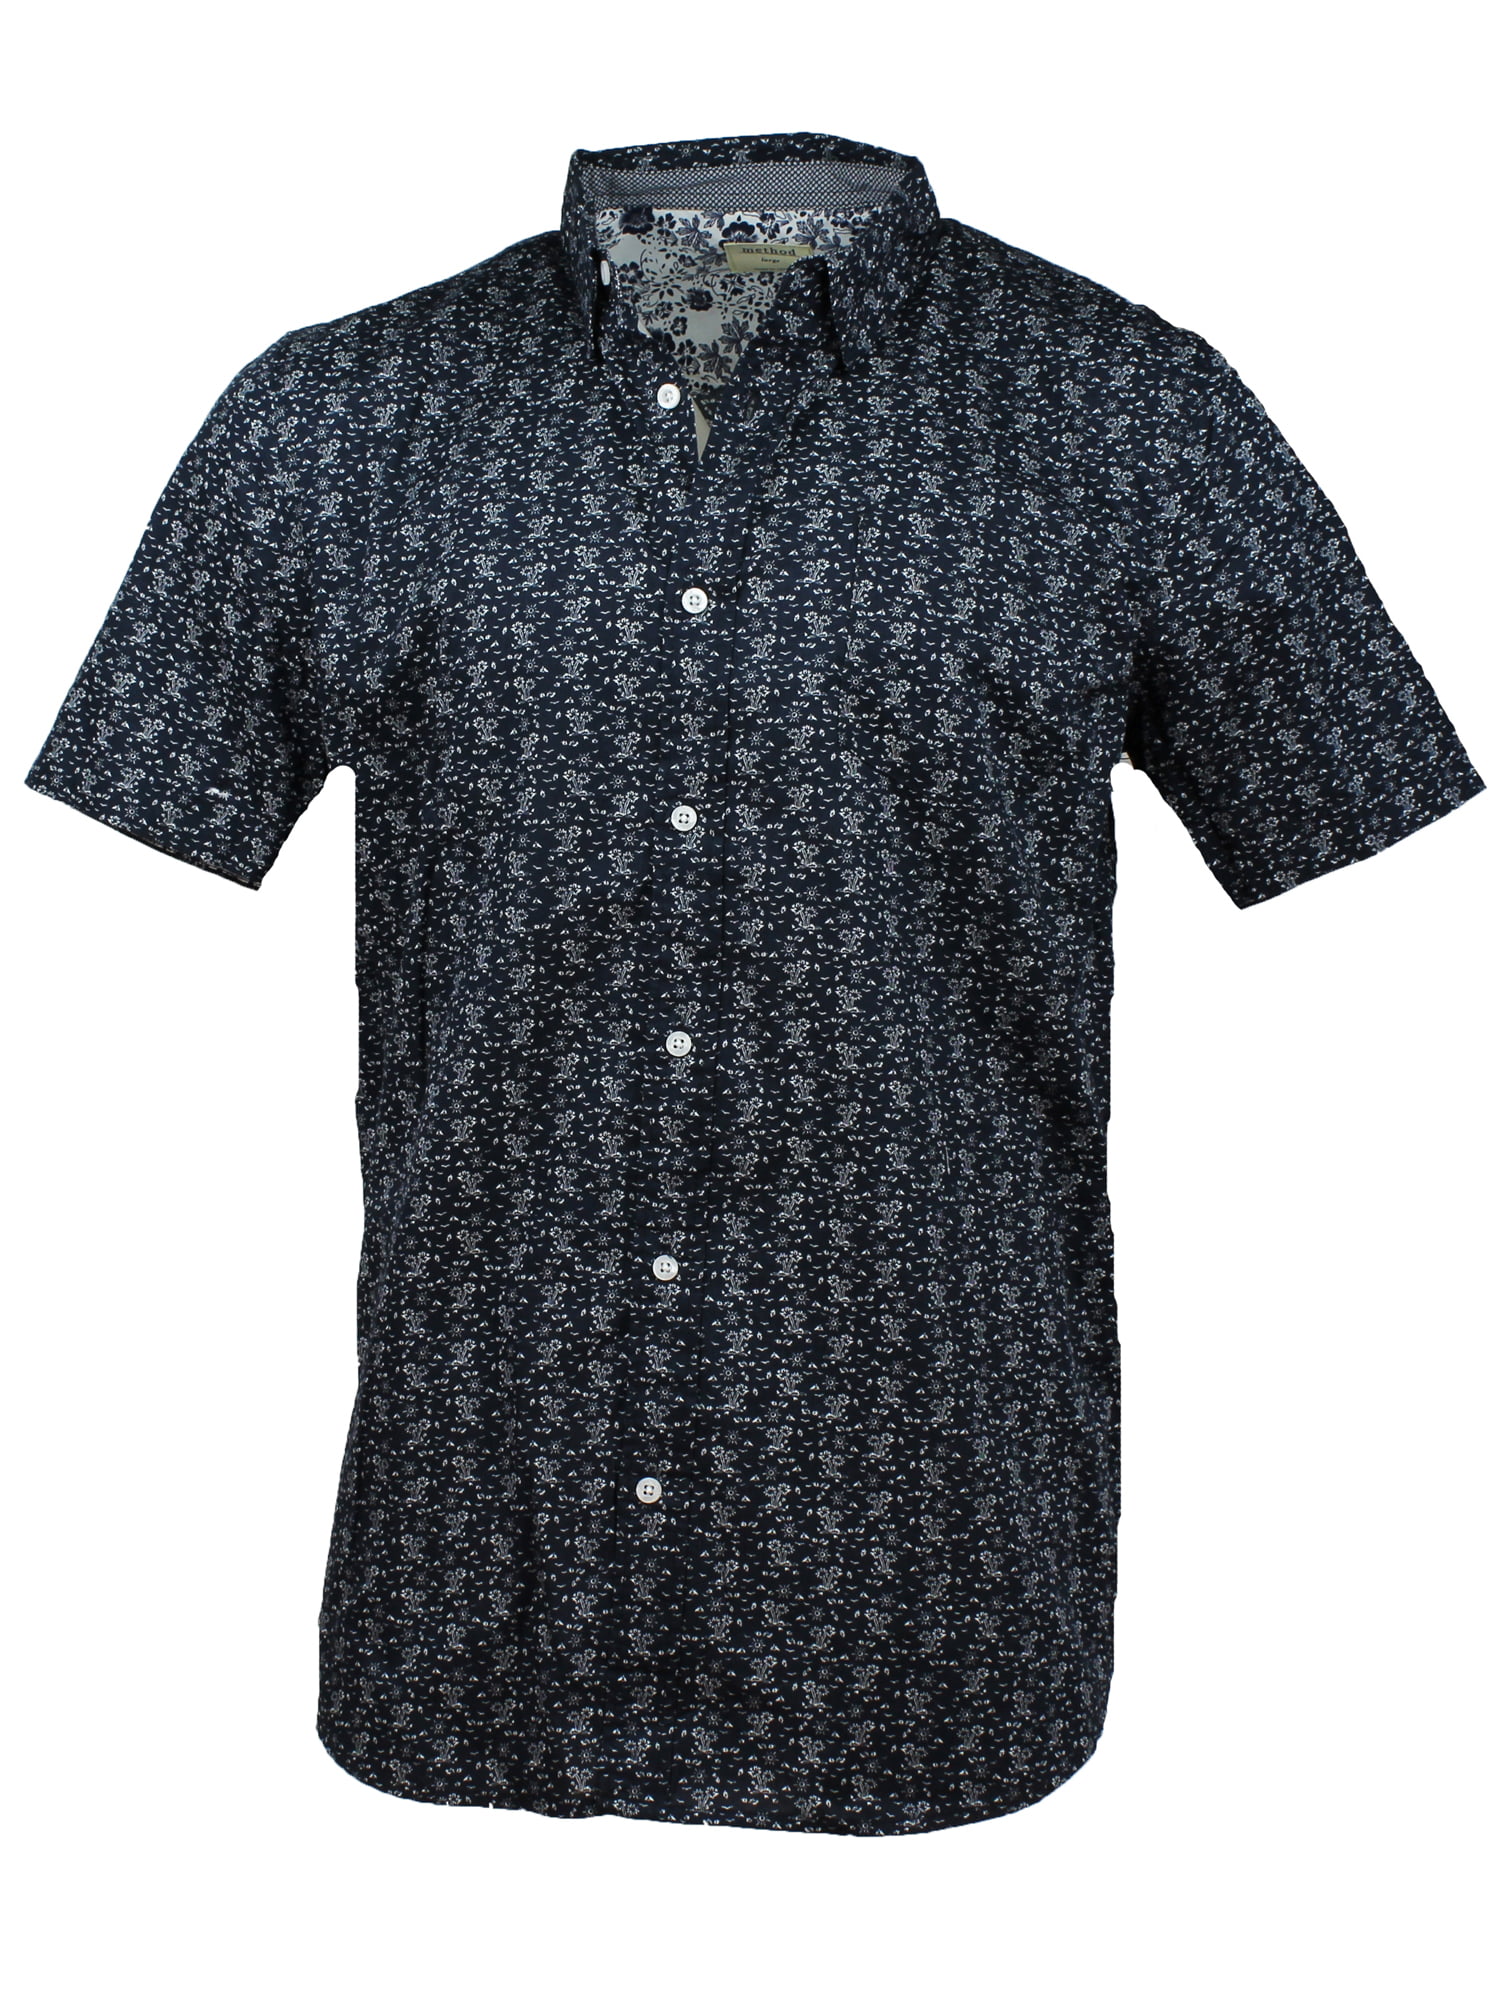 Method Mens Short Sleeve Woven Button Up Shirt (Dress Blues/Islands, XX ...